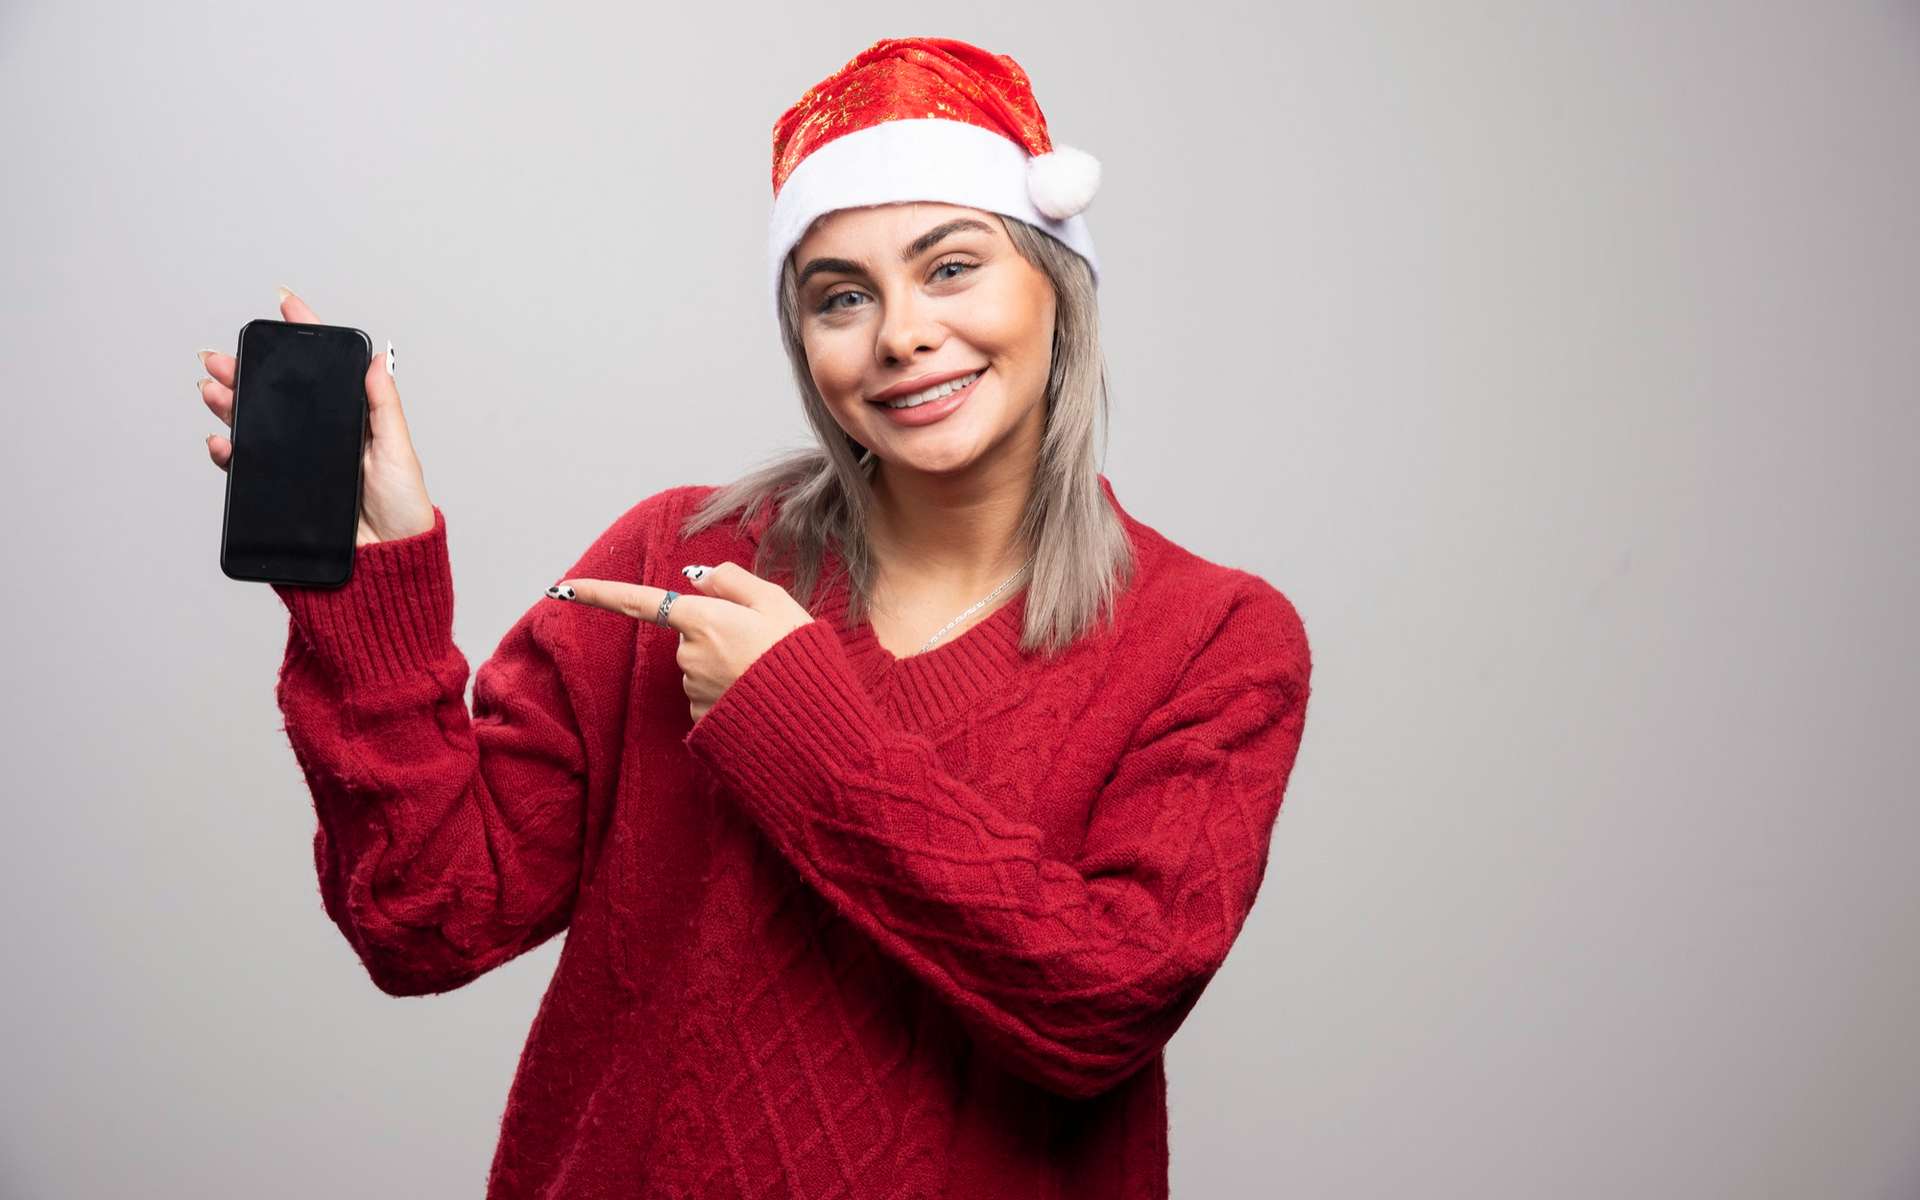 Marché de Noël : une belle sélection de smartphones à prix mini (dès 1€) chez Bouygues Telecom